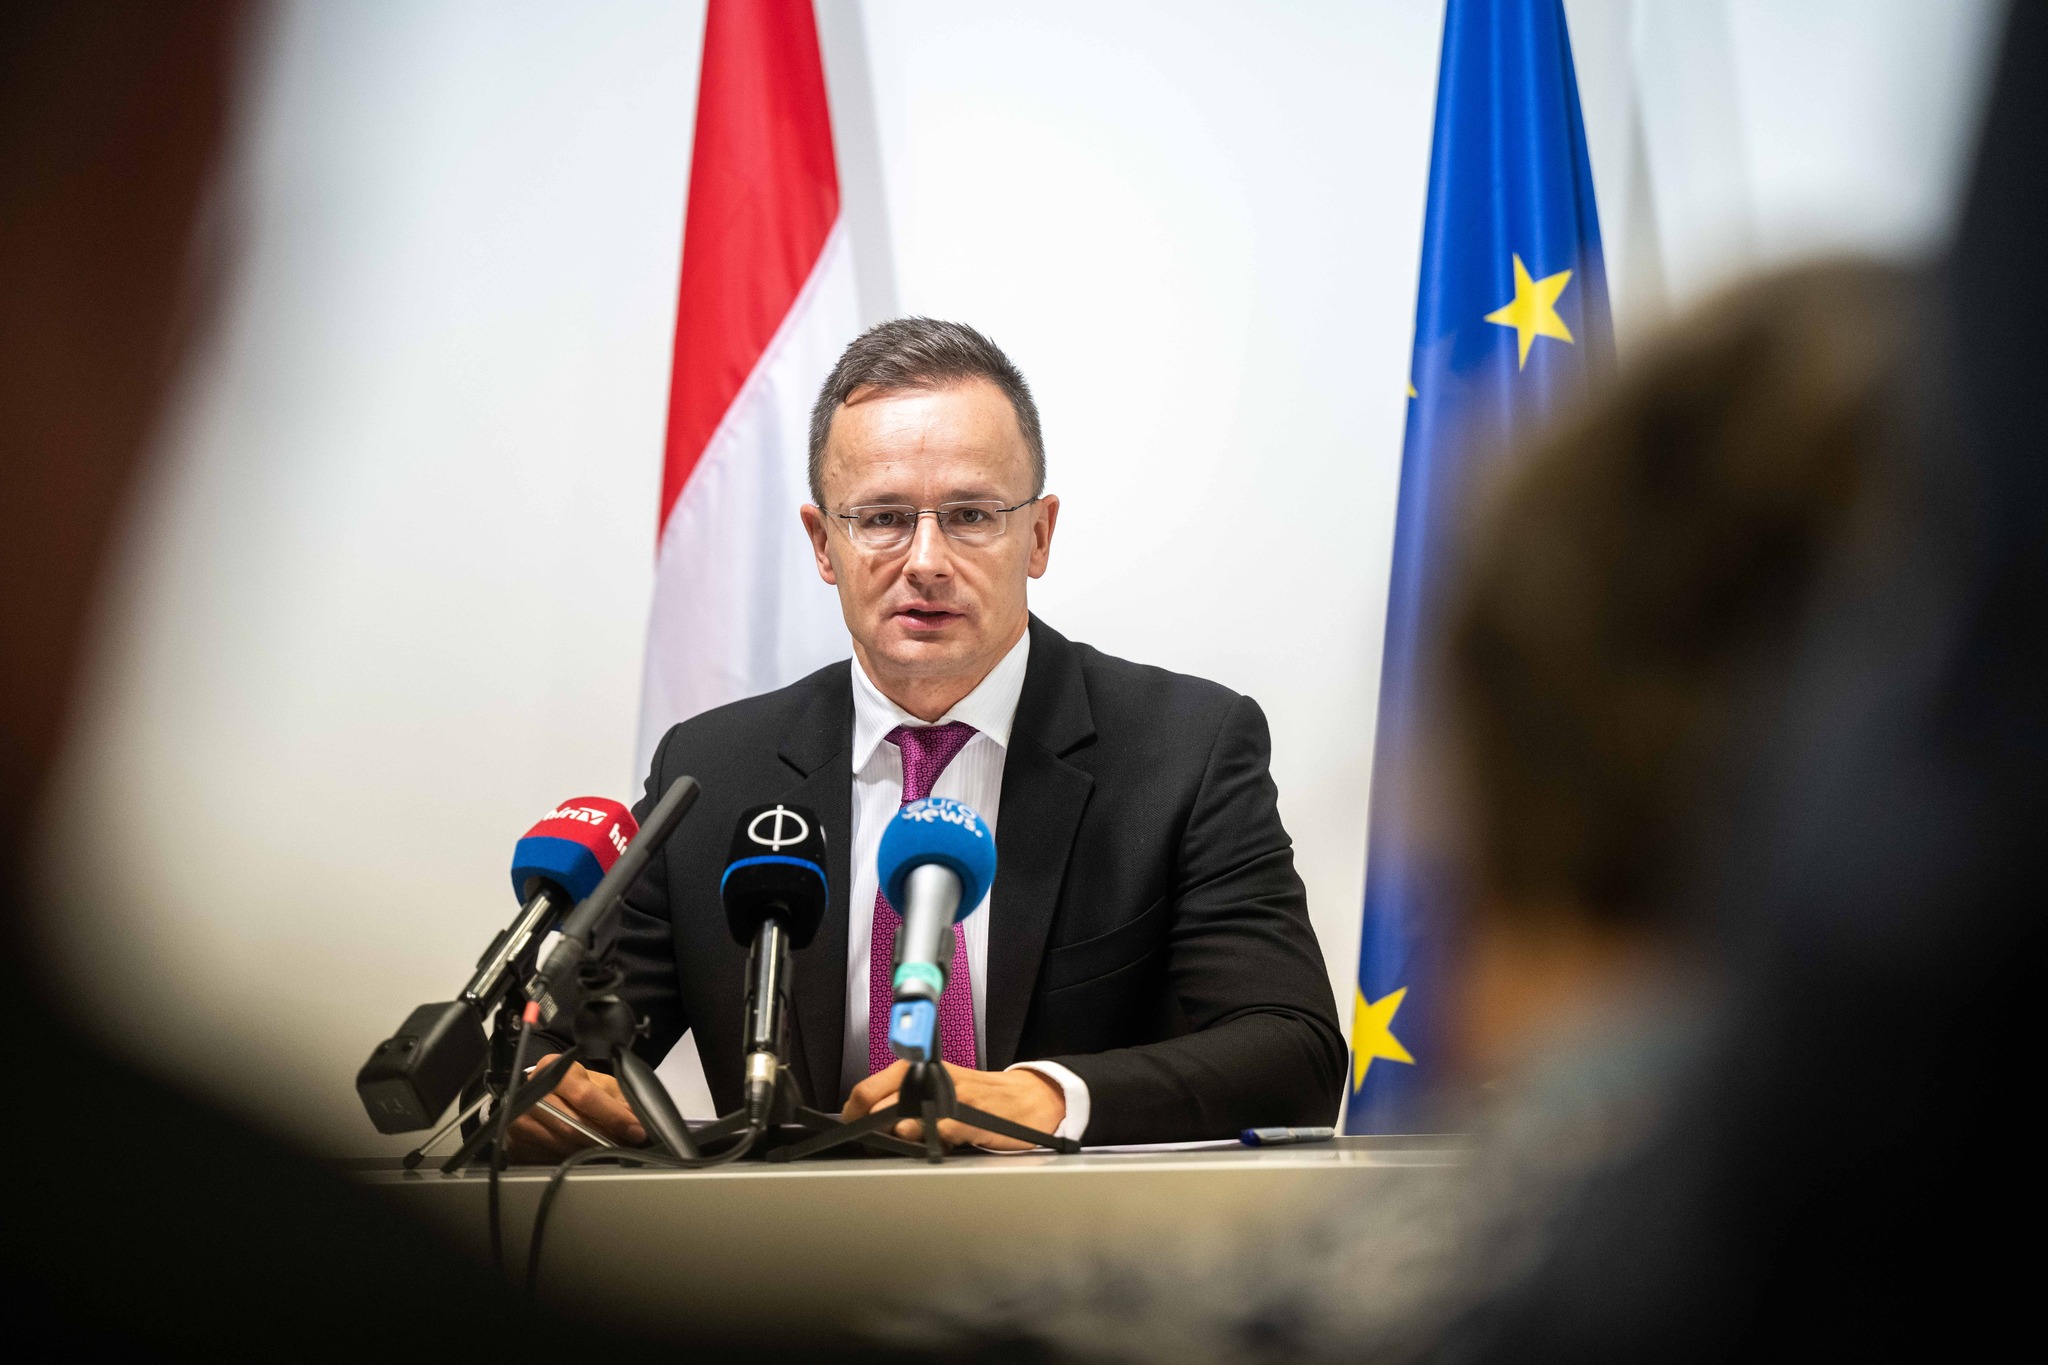 Ungarn hat nicht für EU-Ausbildungsmission in der Ukraine gestimmt